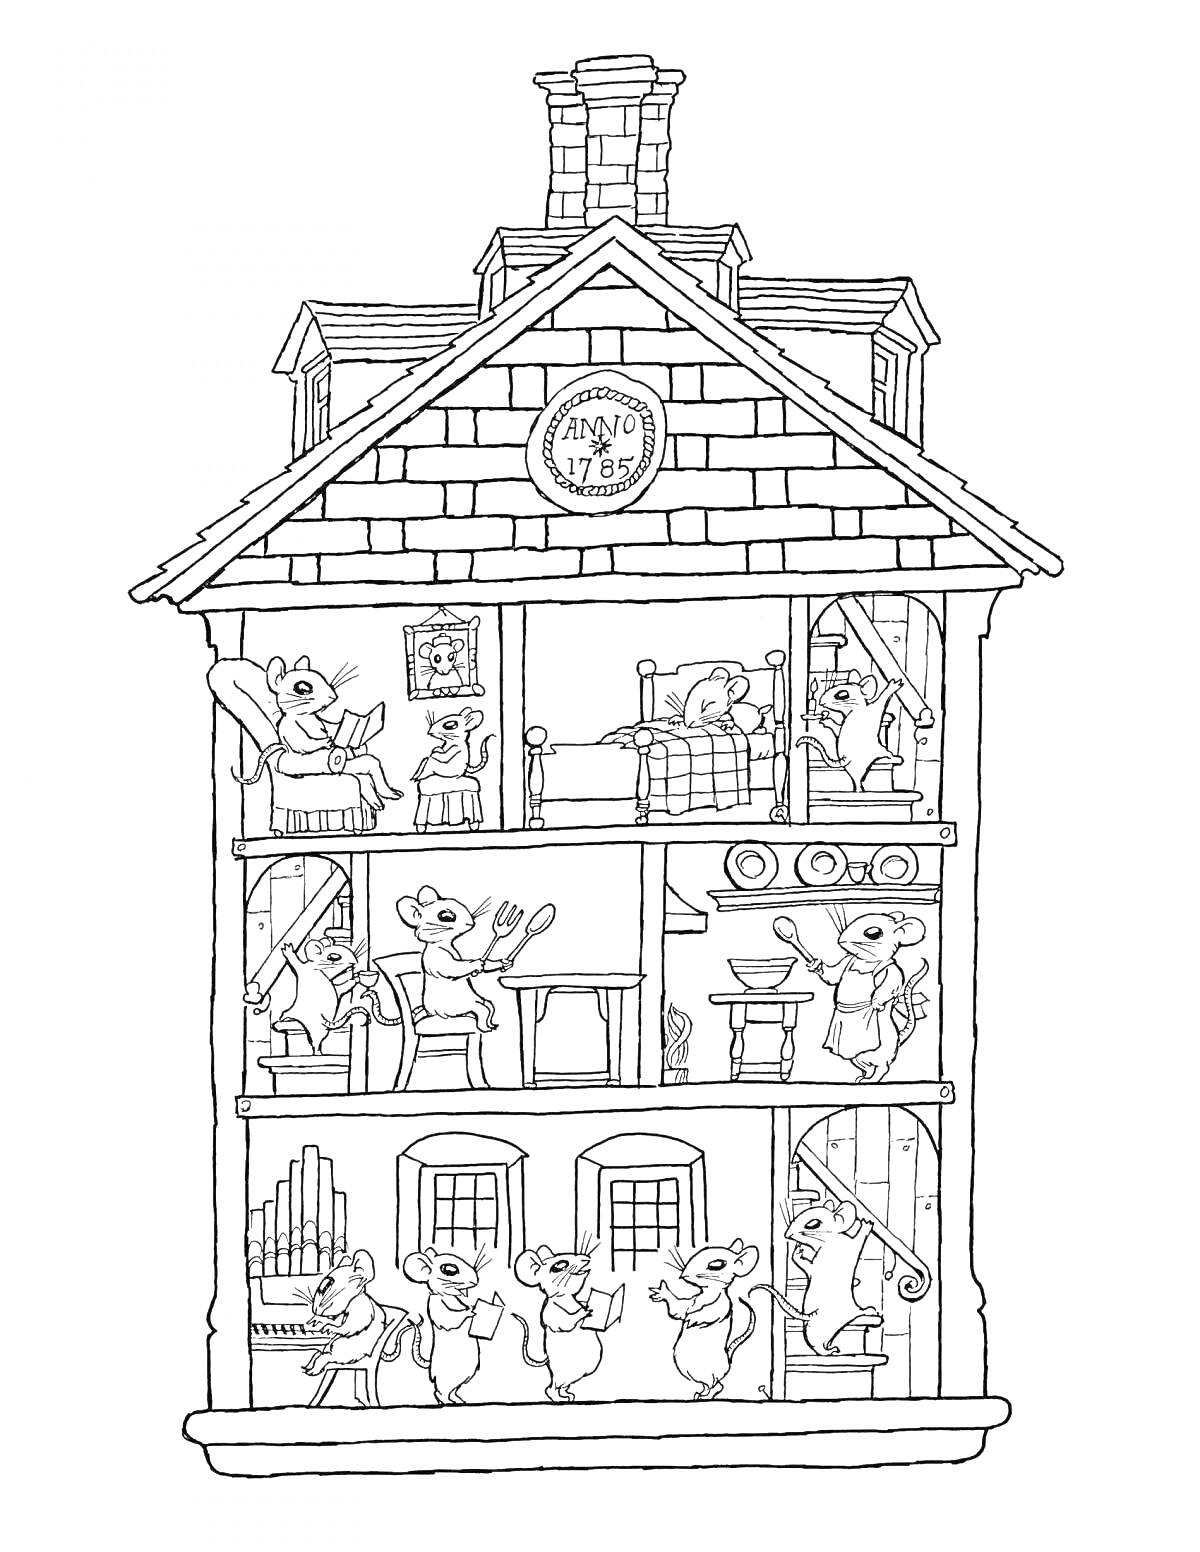 На раскраске изображено: Дом, Комнаты, Мебель, Рояль, Лестница, Камин, Часы, Крыша, Труба, Мышь, Окна, Кровати